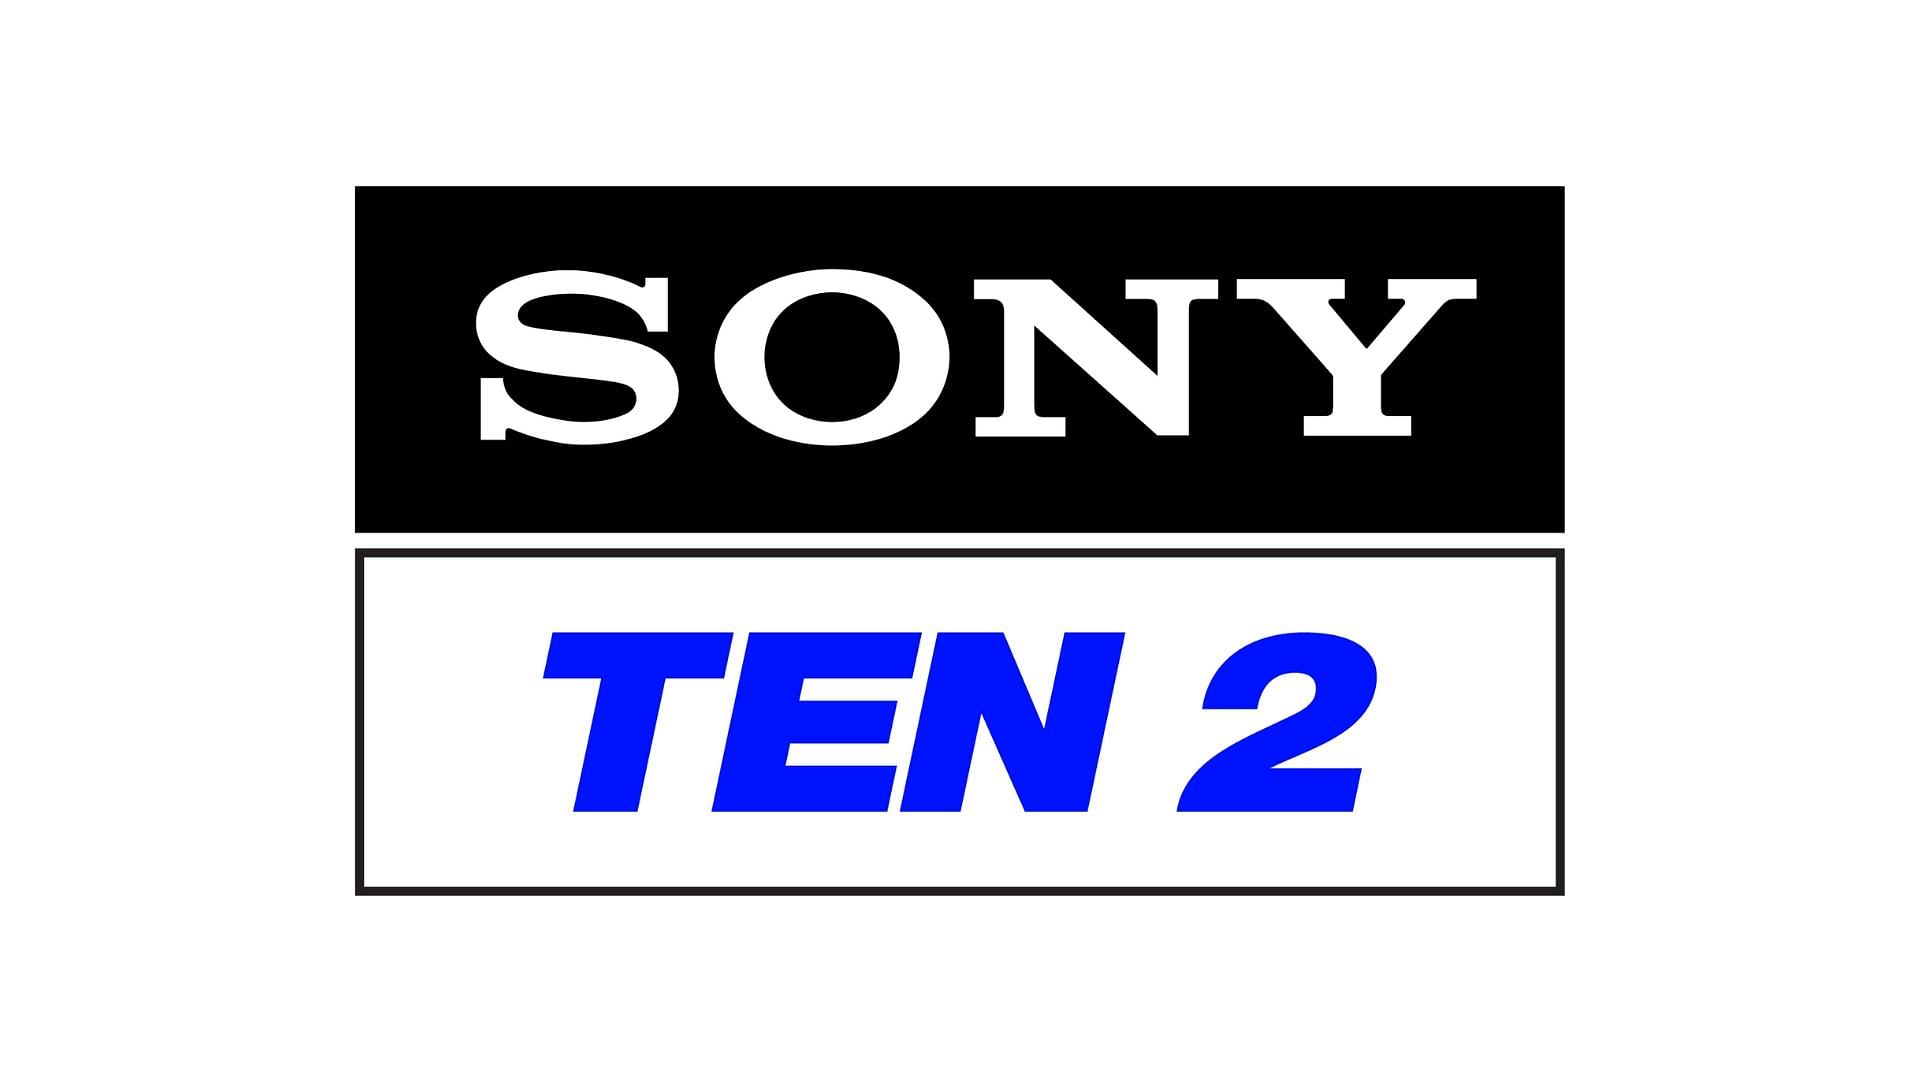 Sony Ten?blur=25